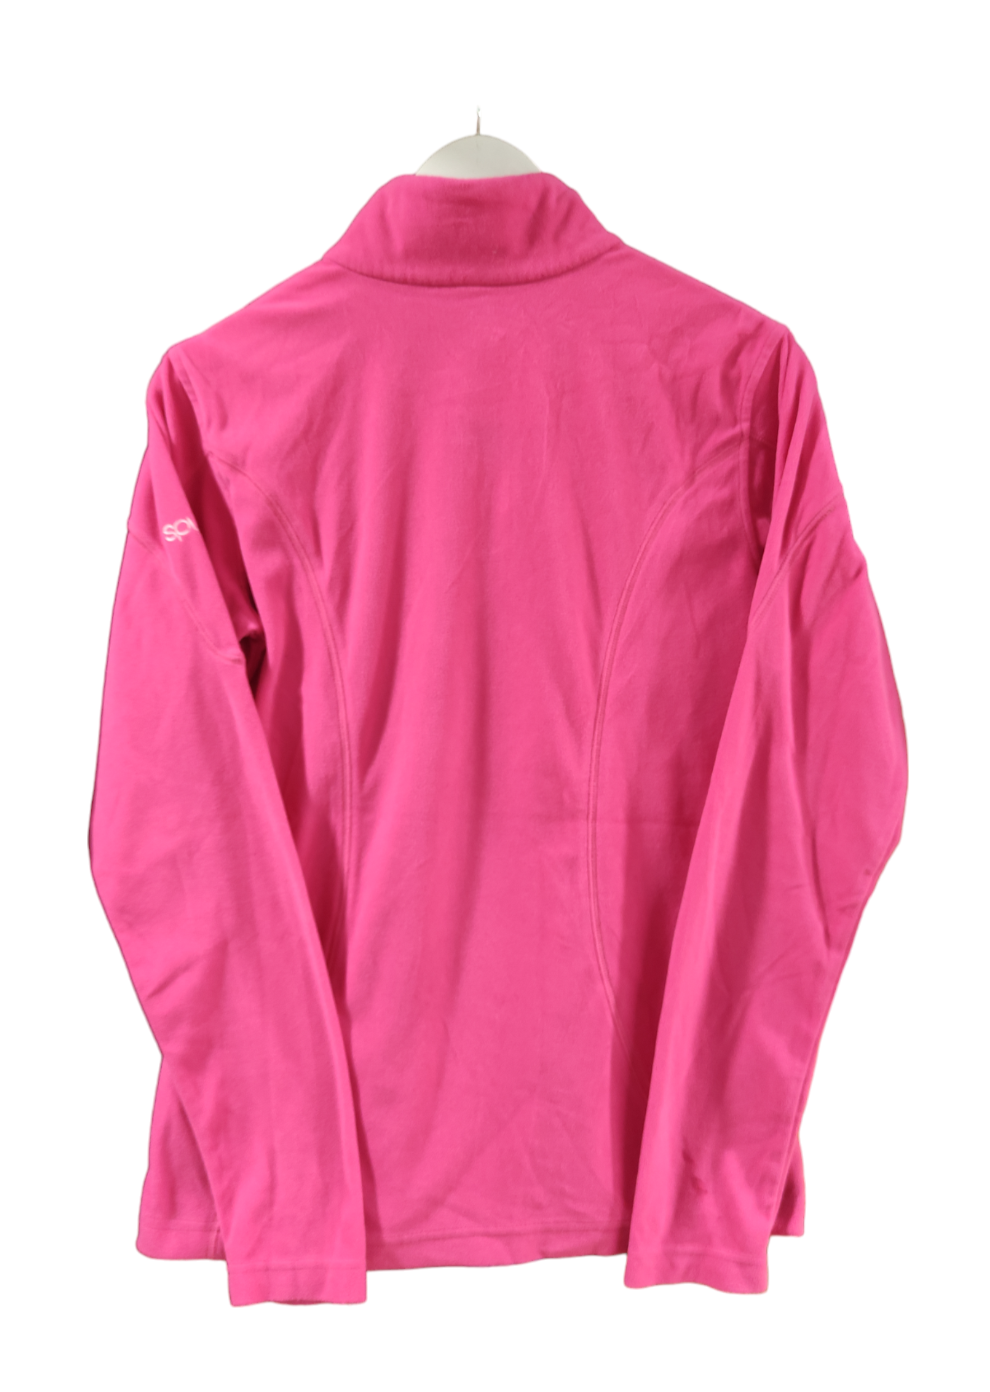 Γυναικεία Φλις Μπλούζα SPYDER σε Φούξια χρώμα (Medium)